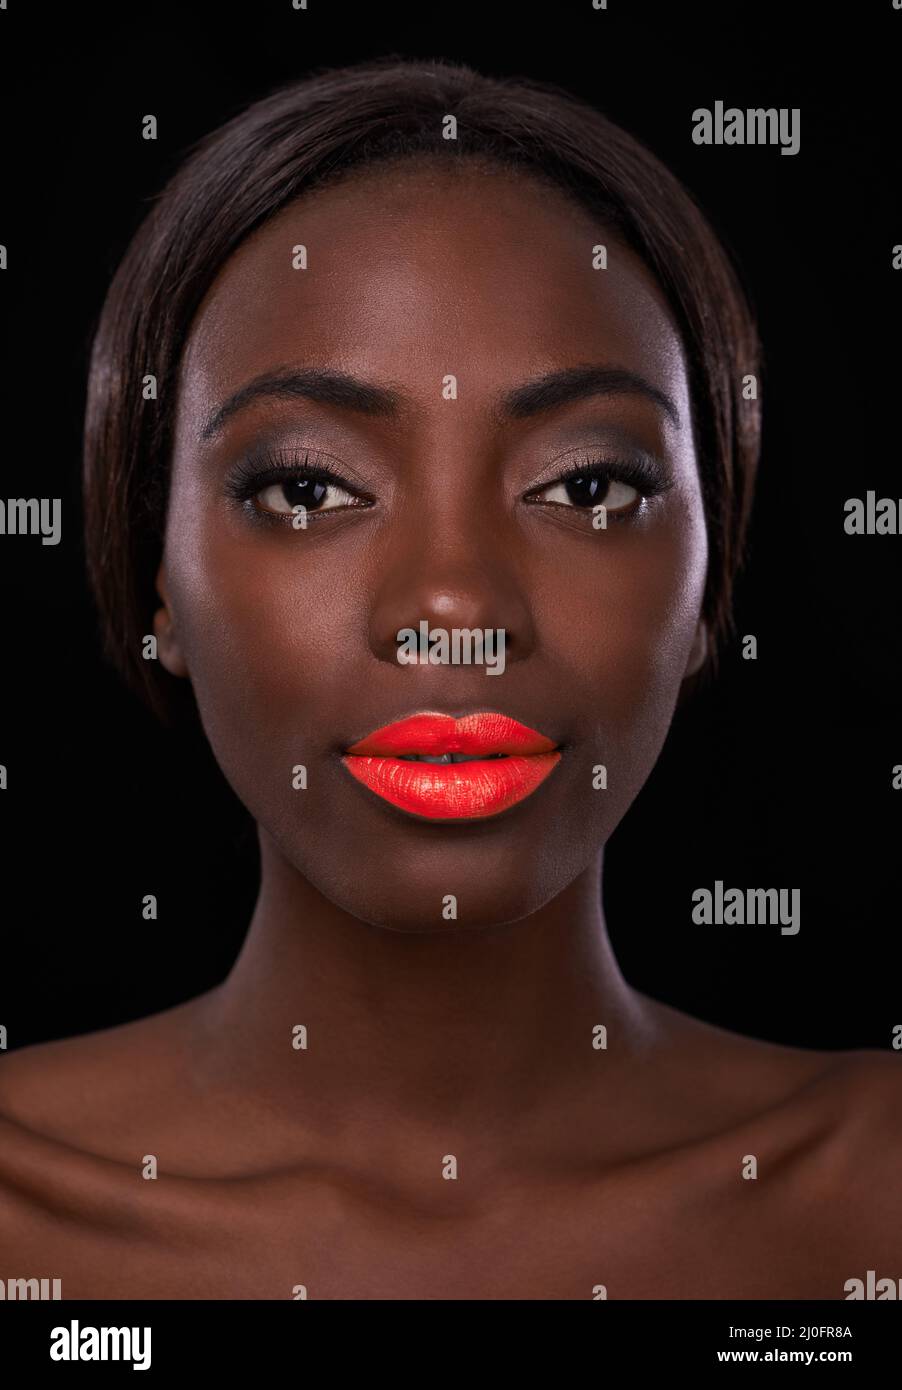 Bitte beachten Sie mich. Beschnittenes Porträt einer attraktiven jungen afrikanerin mit leuchtend roten Lippen. Stockfoto